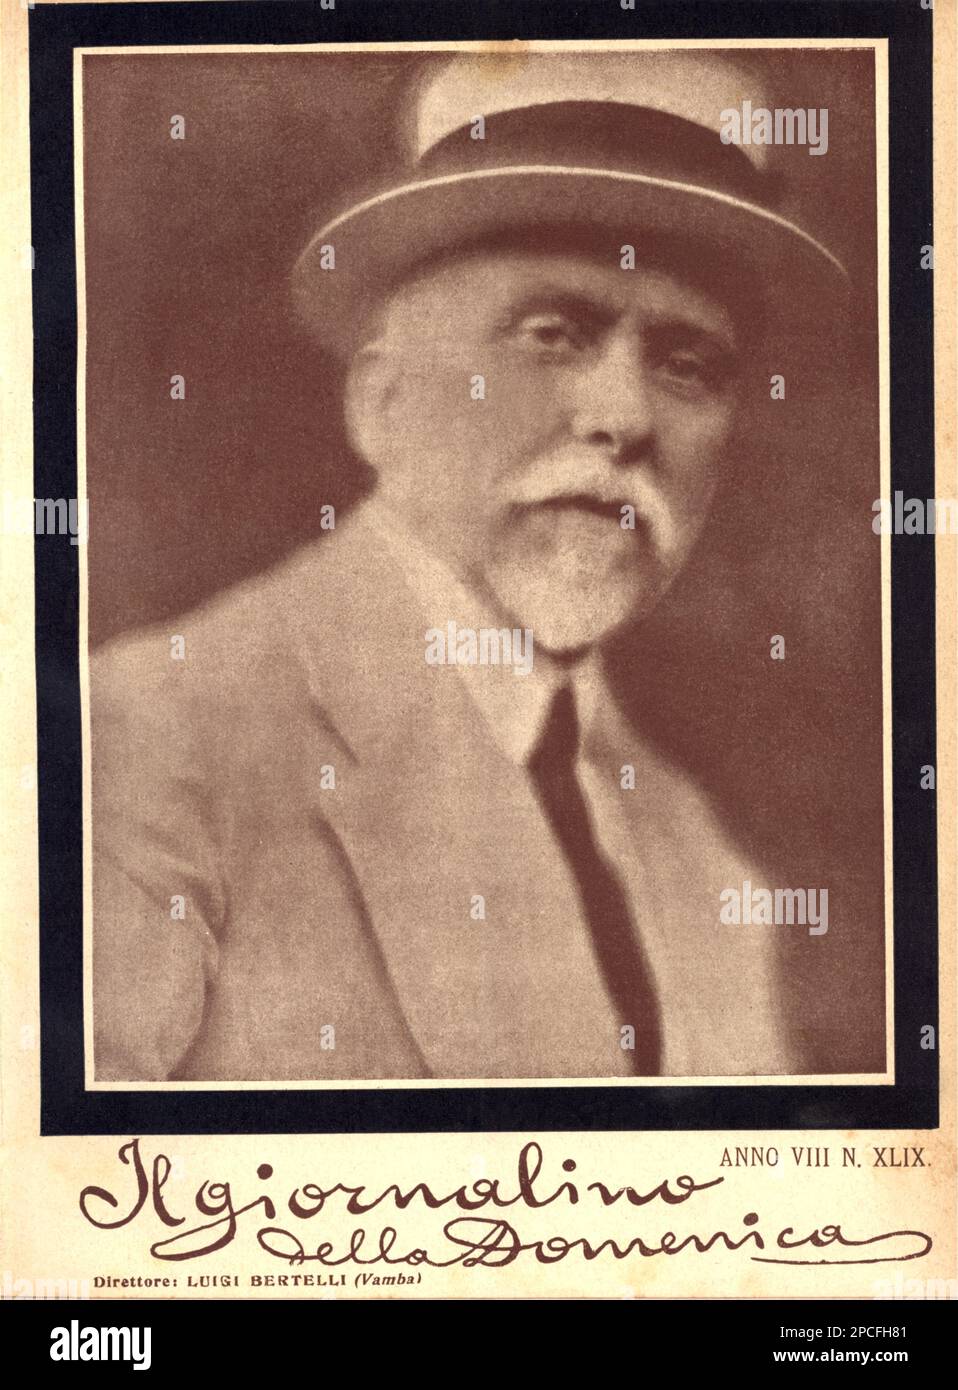 1920 , ITALIE : l'écrivain italien VAMBA ( LUIGI BERTELLI , 1858 - 1920 ), fondateur et directeur du magazine il GIORNALINO DELLA DOMENICA de 1906 à 1920 , avec la collaboration de Giovanni Pascoli, Gabriele d'Annunzio, Grazia Deledda, Edmondo de Amicis . Dans cette photo, le numéro consacré à la mort de Vamba. Egalement poète et journaliste, a écrit le célèbre livre il GIORNALINO DI GIANBURRASCA ( 1907-1920 , publié en 1920 par Bemporad Editor ) - SCRITTORE - LITTÉRATURE - LETTERATURA - LETTERATURA per l'infanzia per ragazzi - copertina - giornale - couverture - pagletteratura - pagletuntagletagletagletagleta - pagletagletagletagletagletaglet Banque D'Images